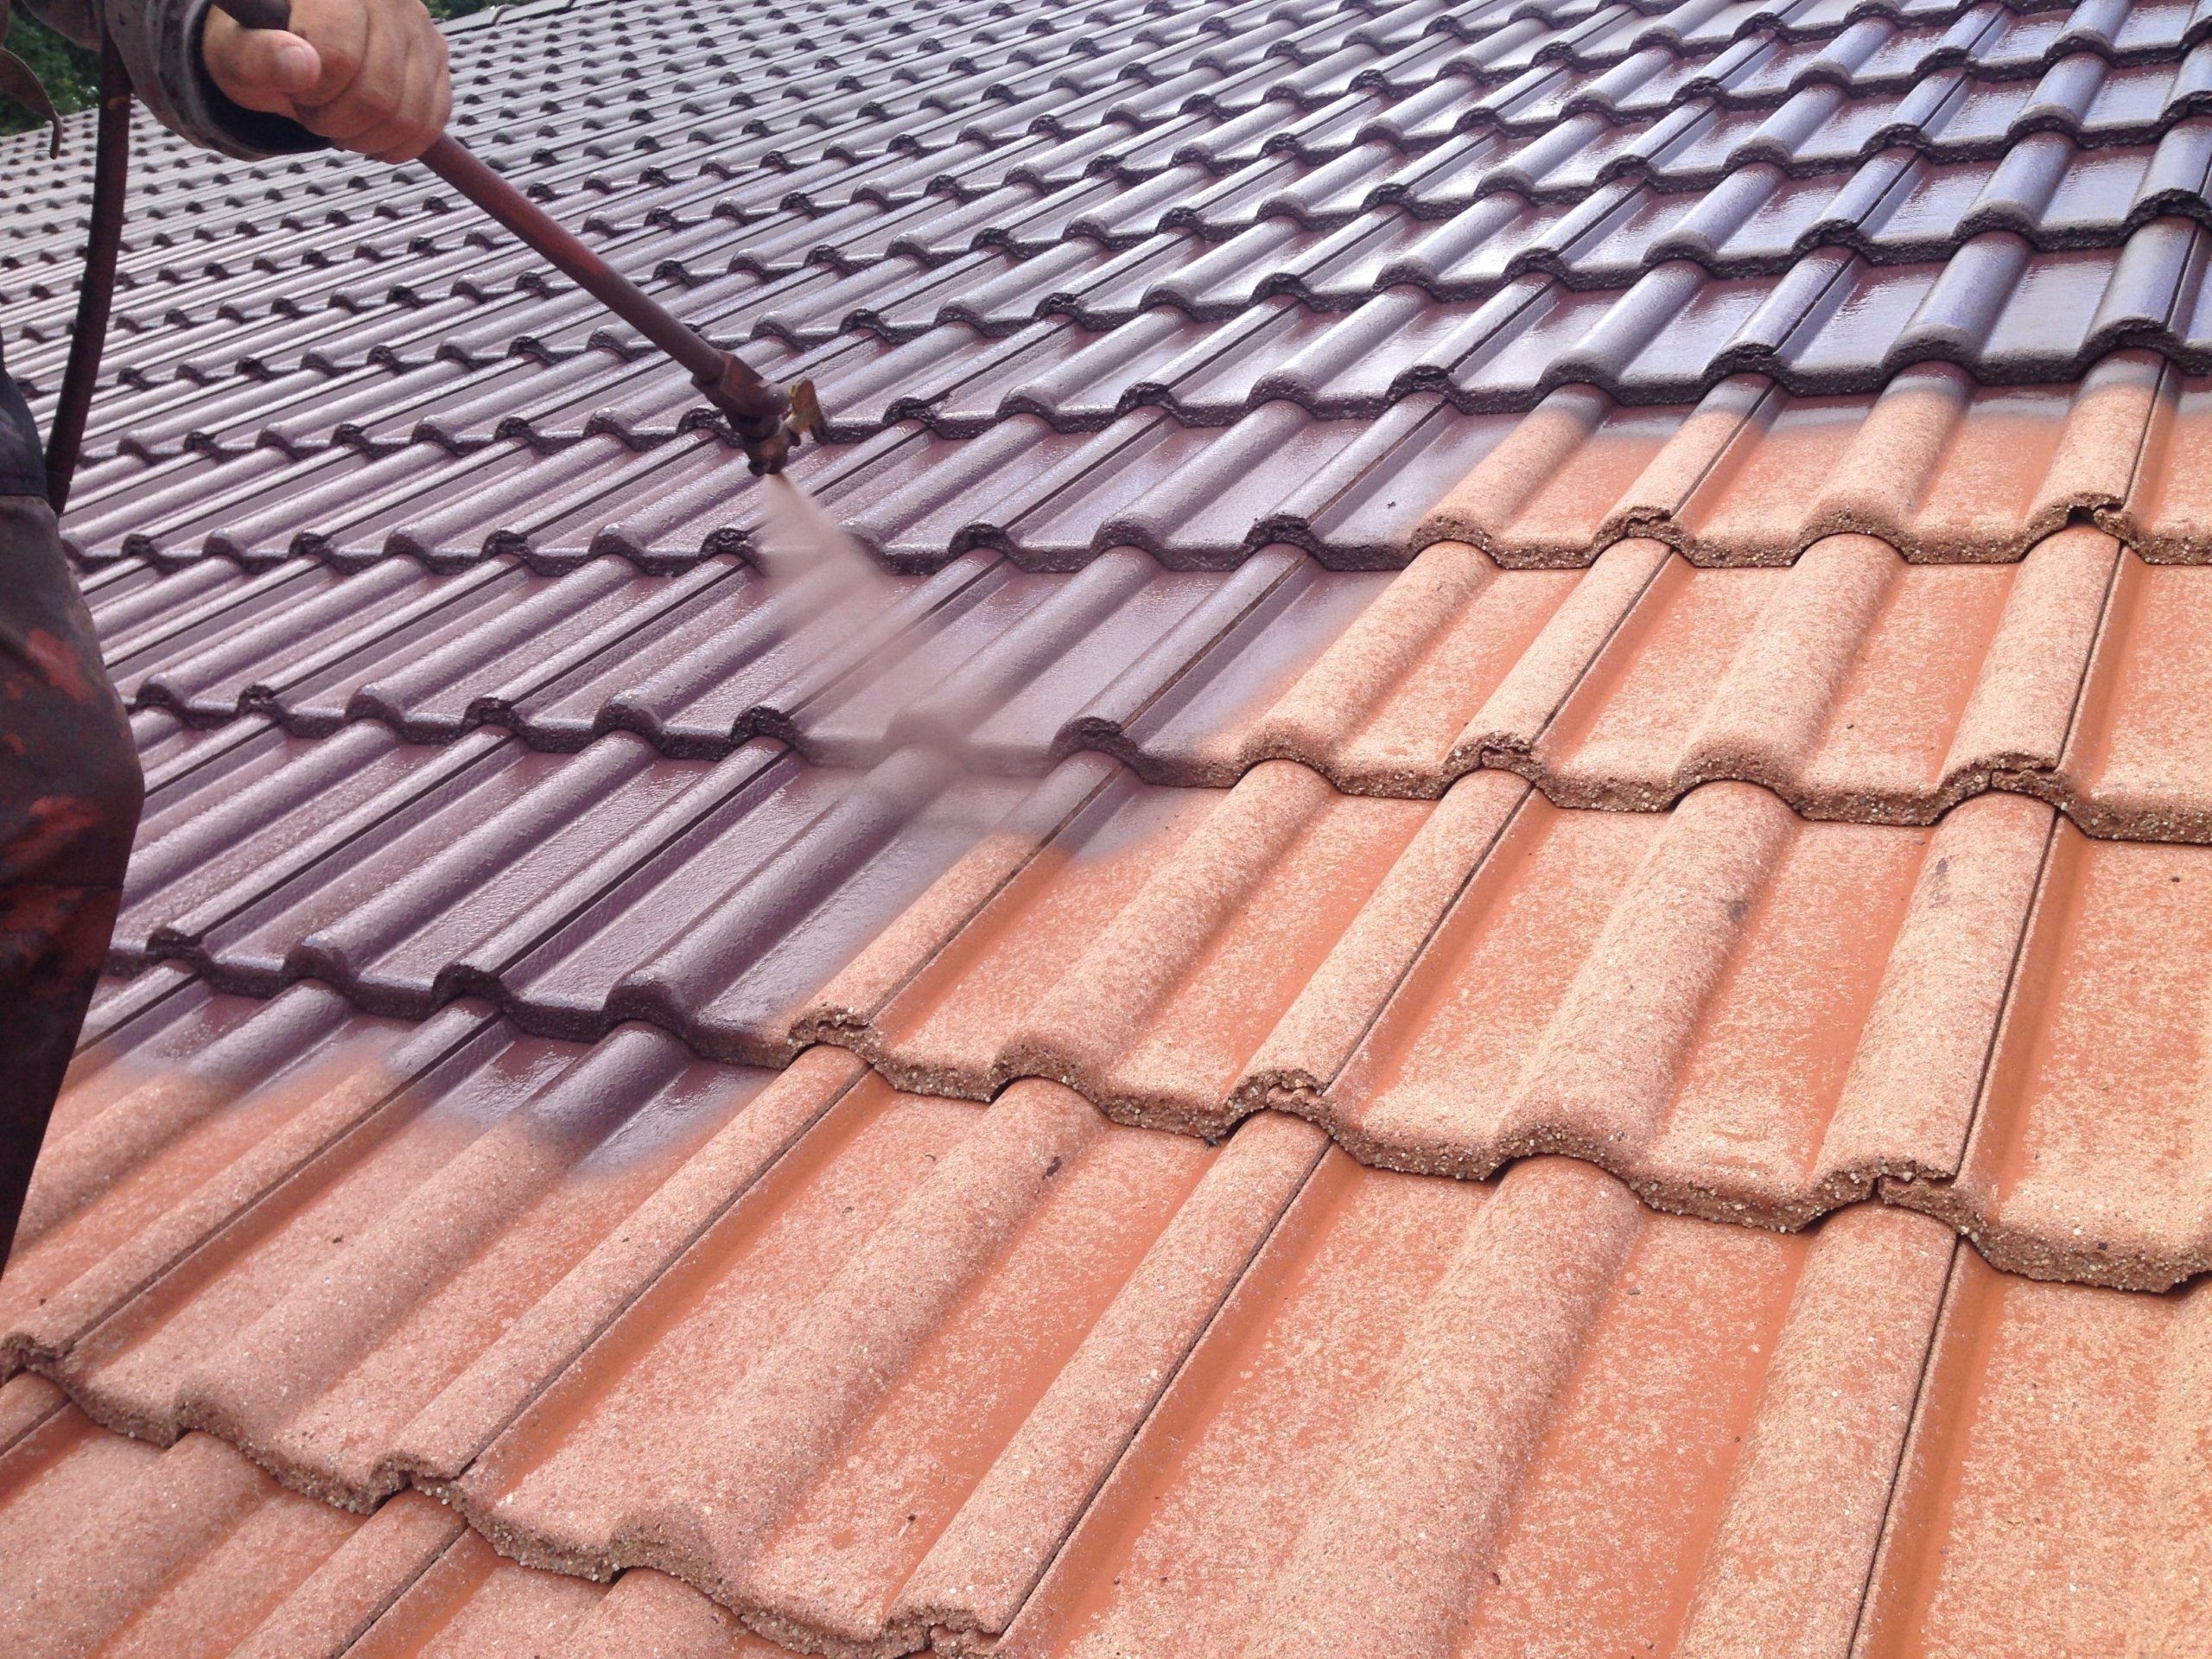 Dachreinigung mit Dachbeschichtung 8 dach beschichten mit airless sprühgerät in der farbe anthrazit scaled